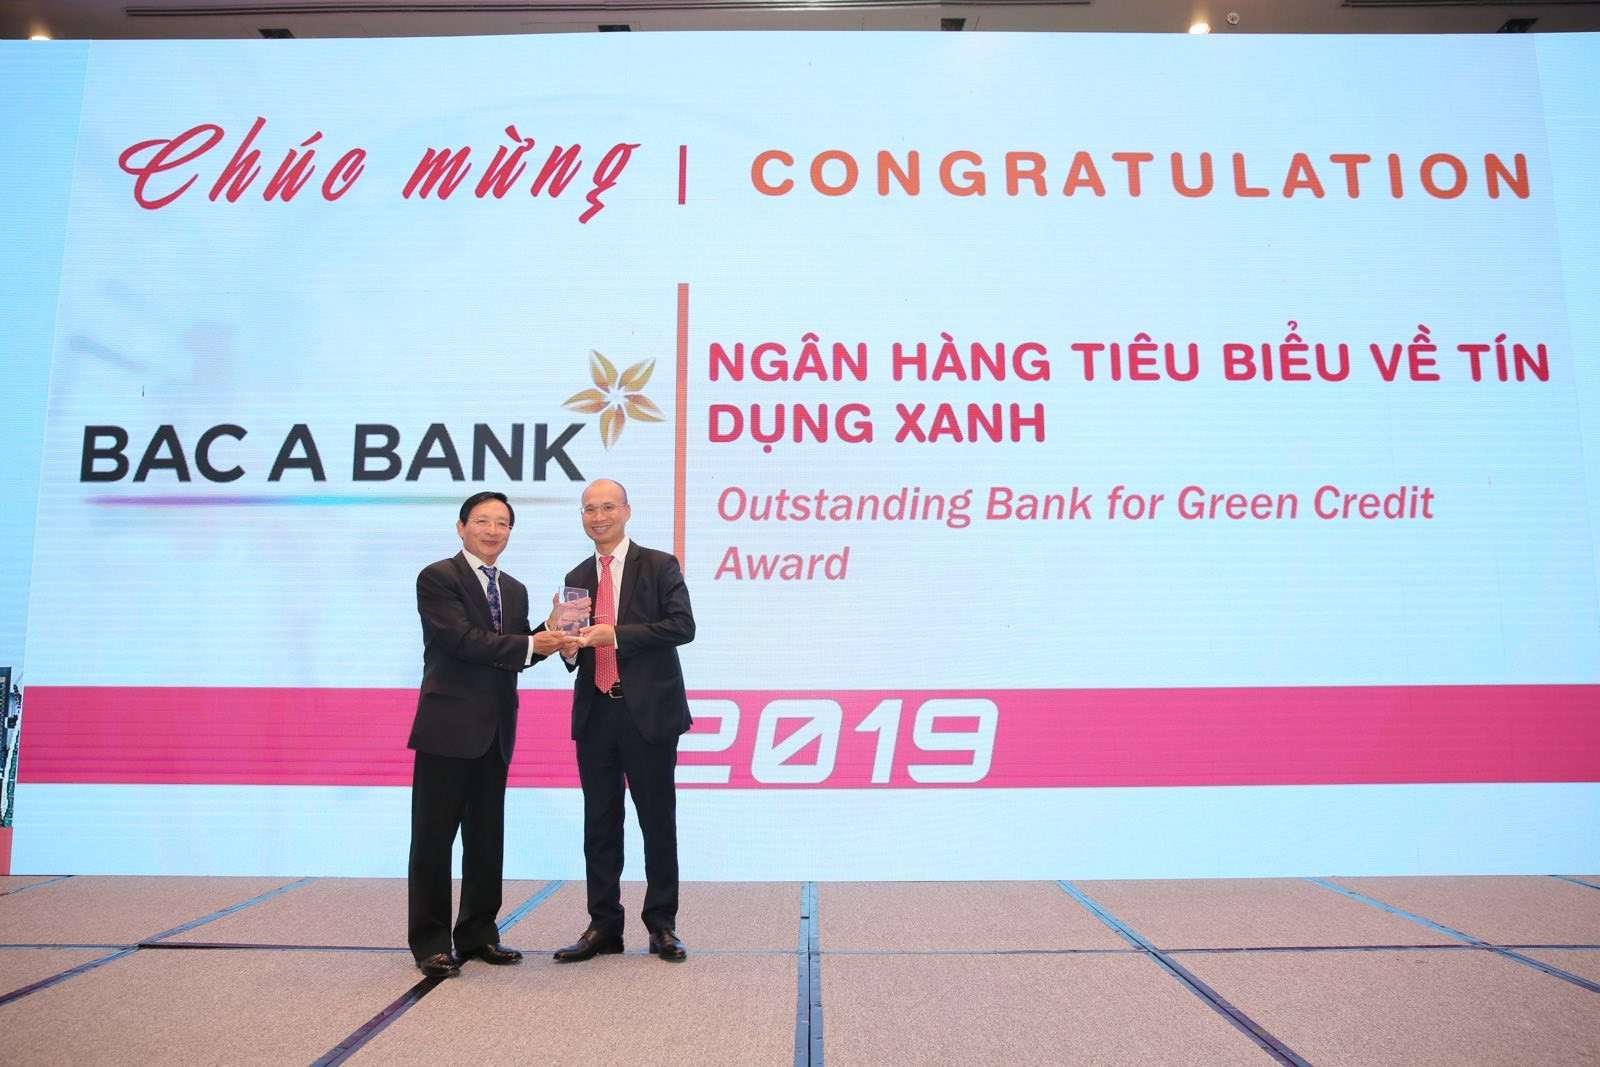 Với những nỗ lực của mình, năm 2019, BAC A BANK nhận giải thưởng Ngân hàng tiêu biểu về Tín dụng xanh. Ảnh: P.V